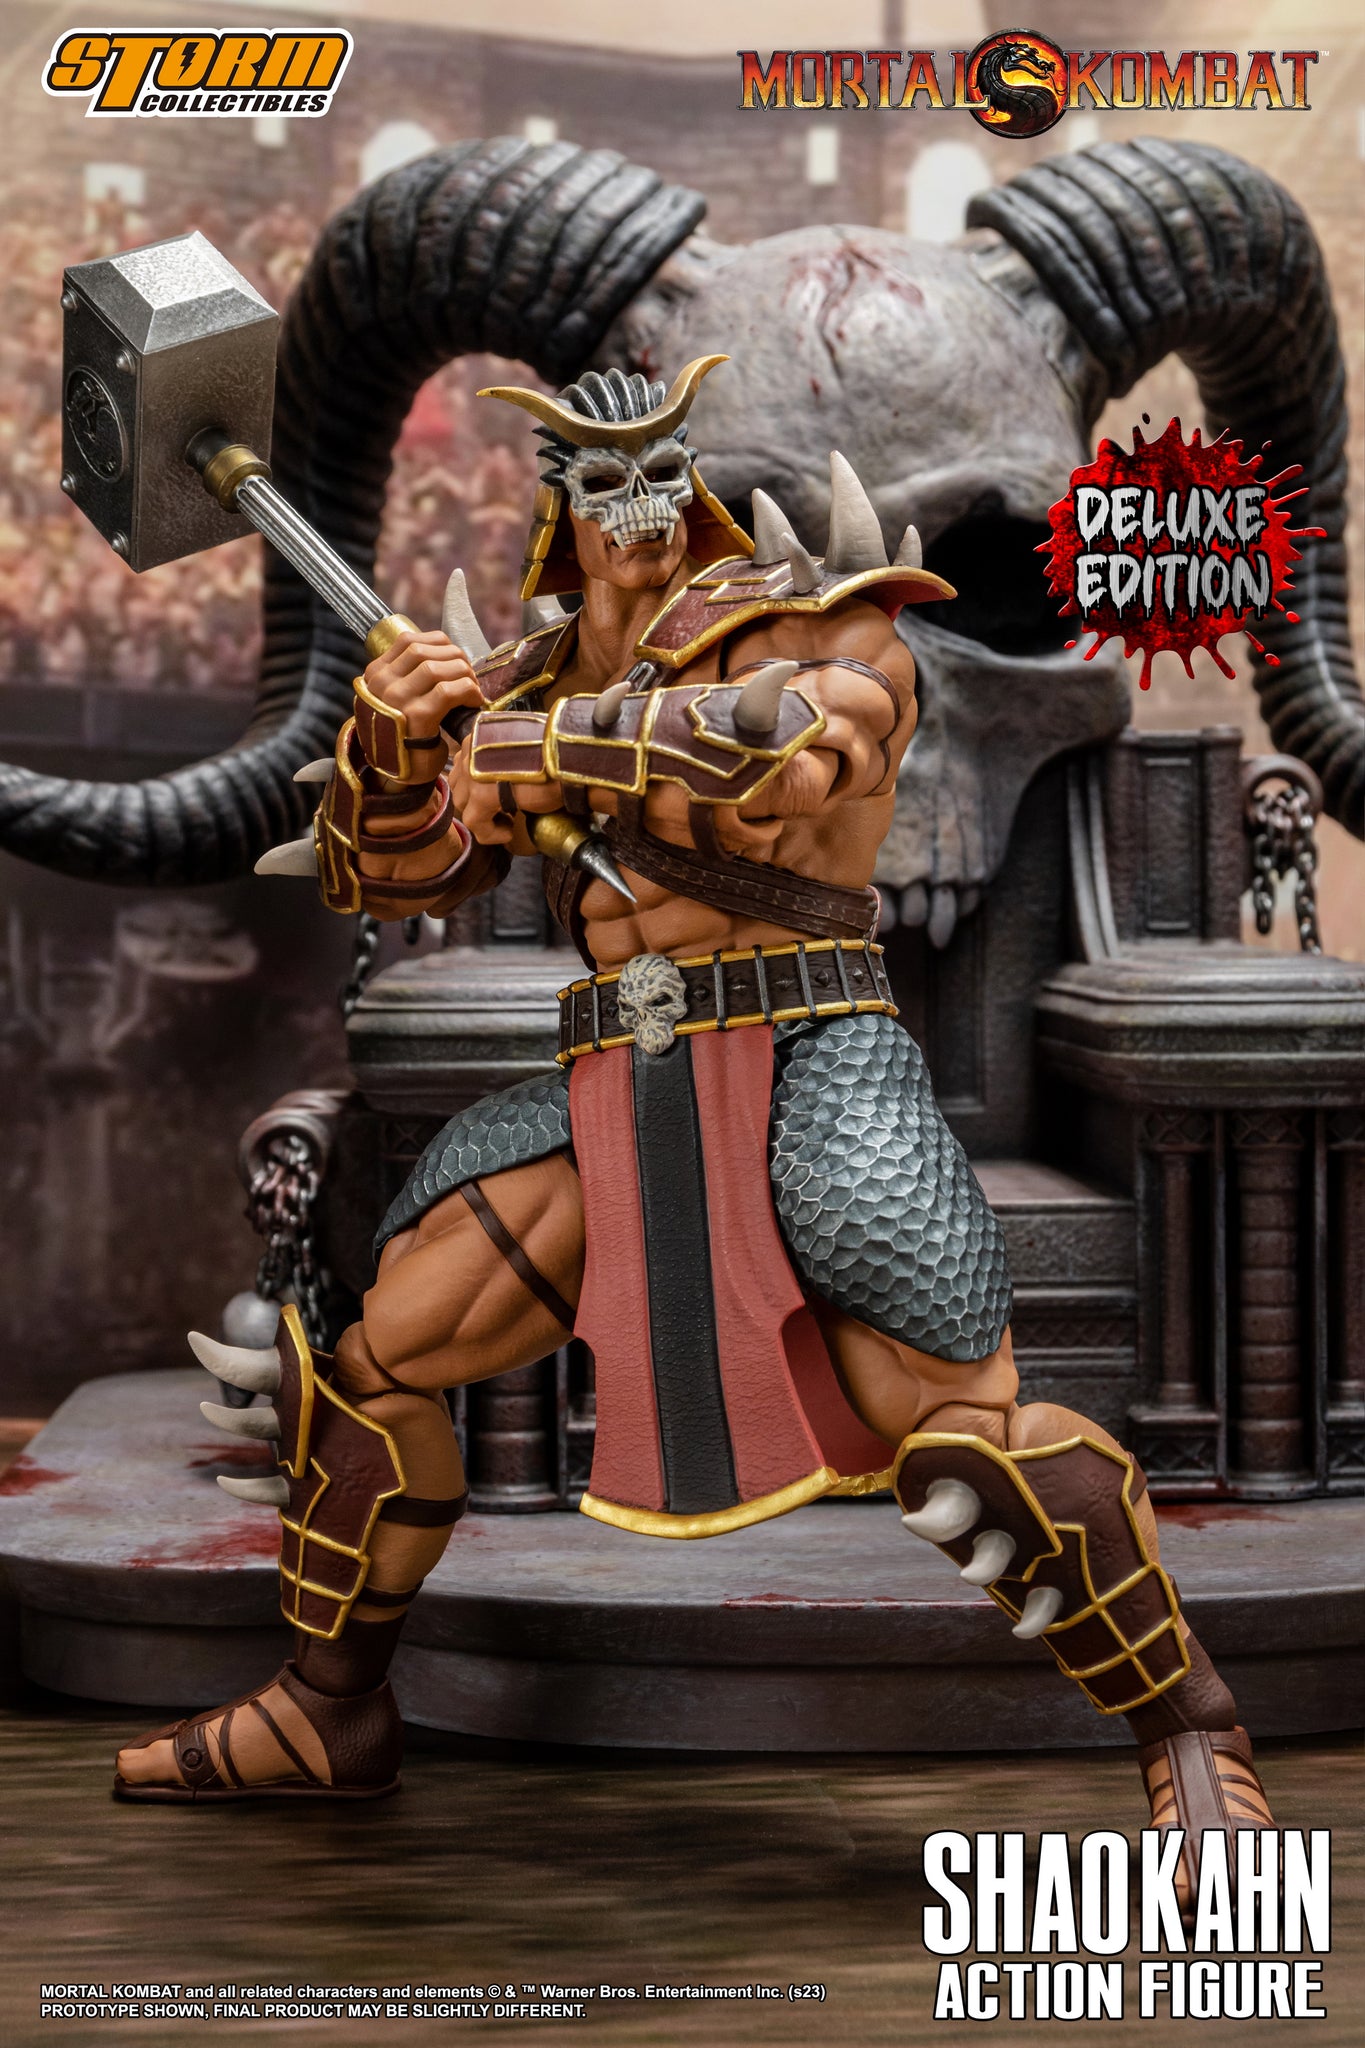 Shao Kahn Mortal Kombat Storm Collectibles Original - Prime Colecionismo -  Colecionando clientes, e acima de tudo bons amigos.